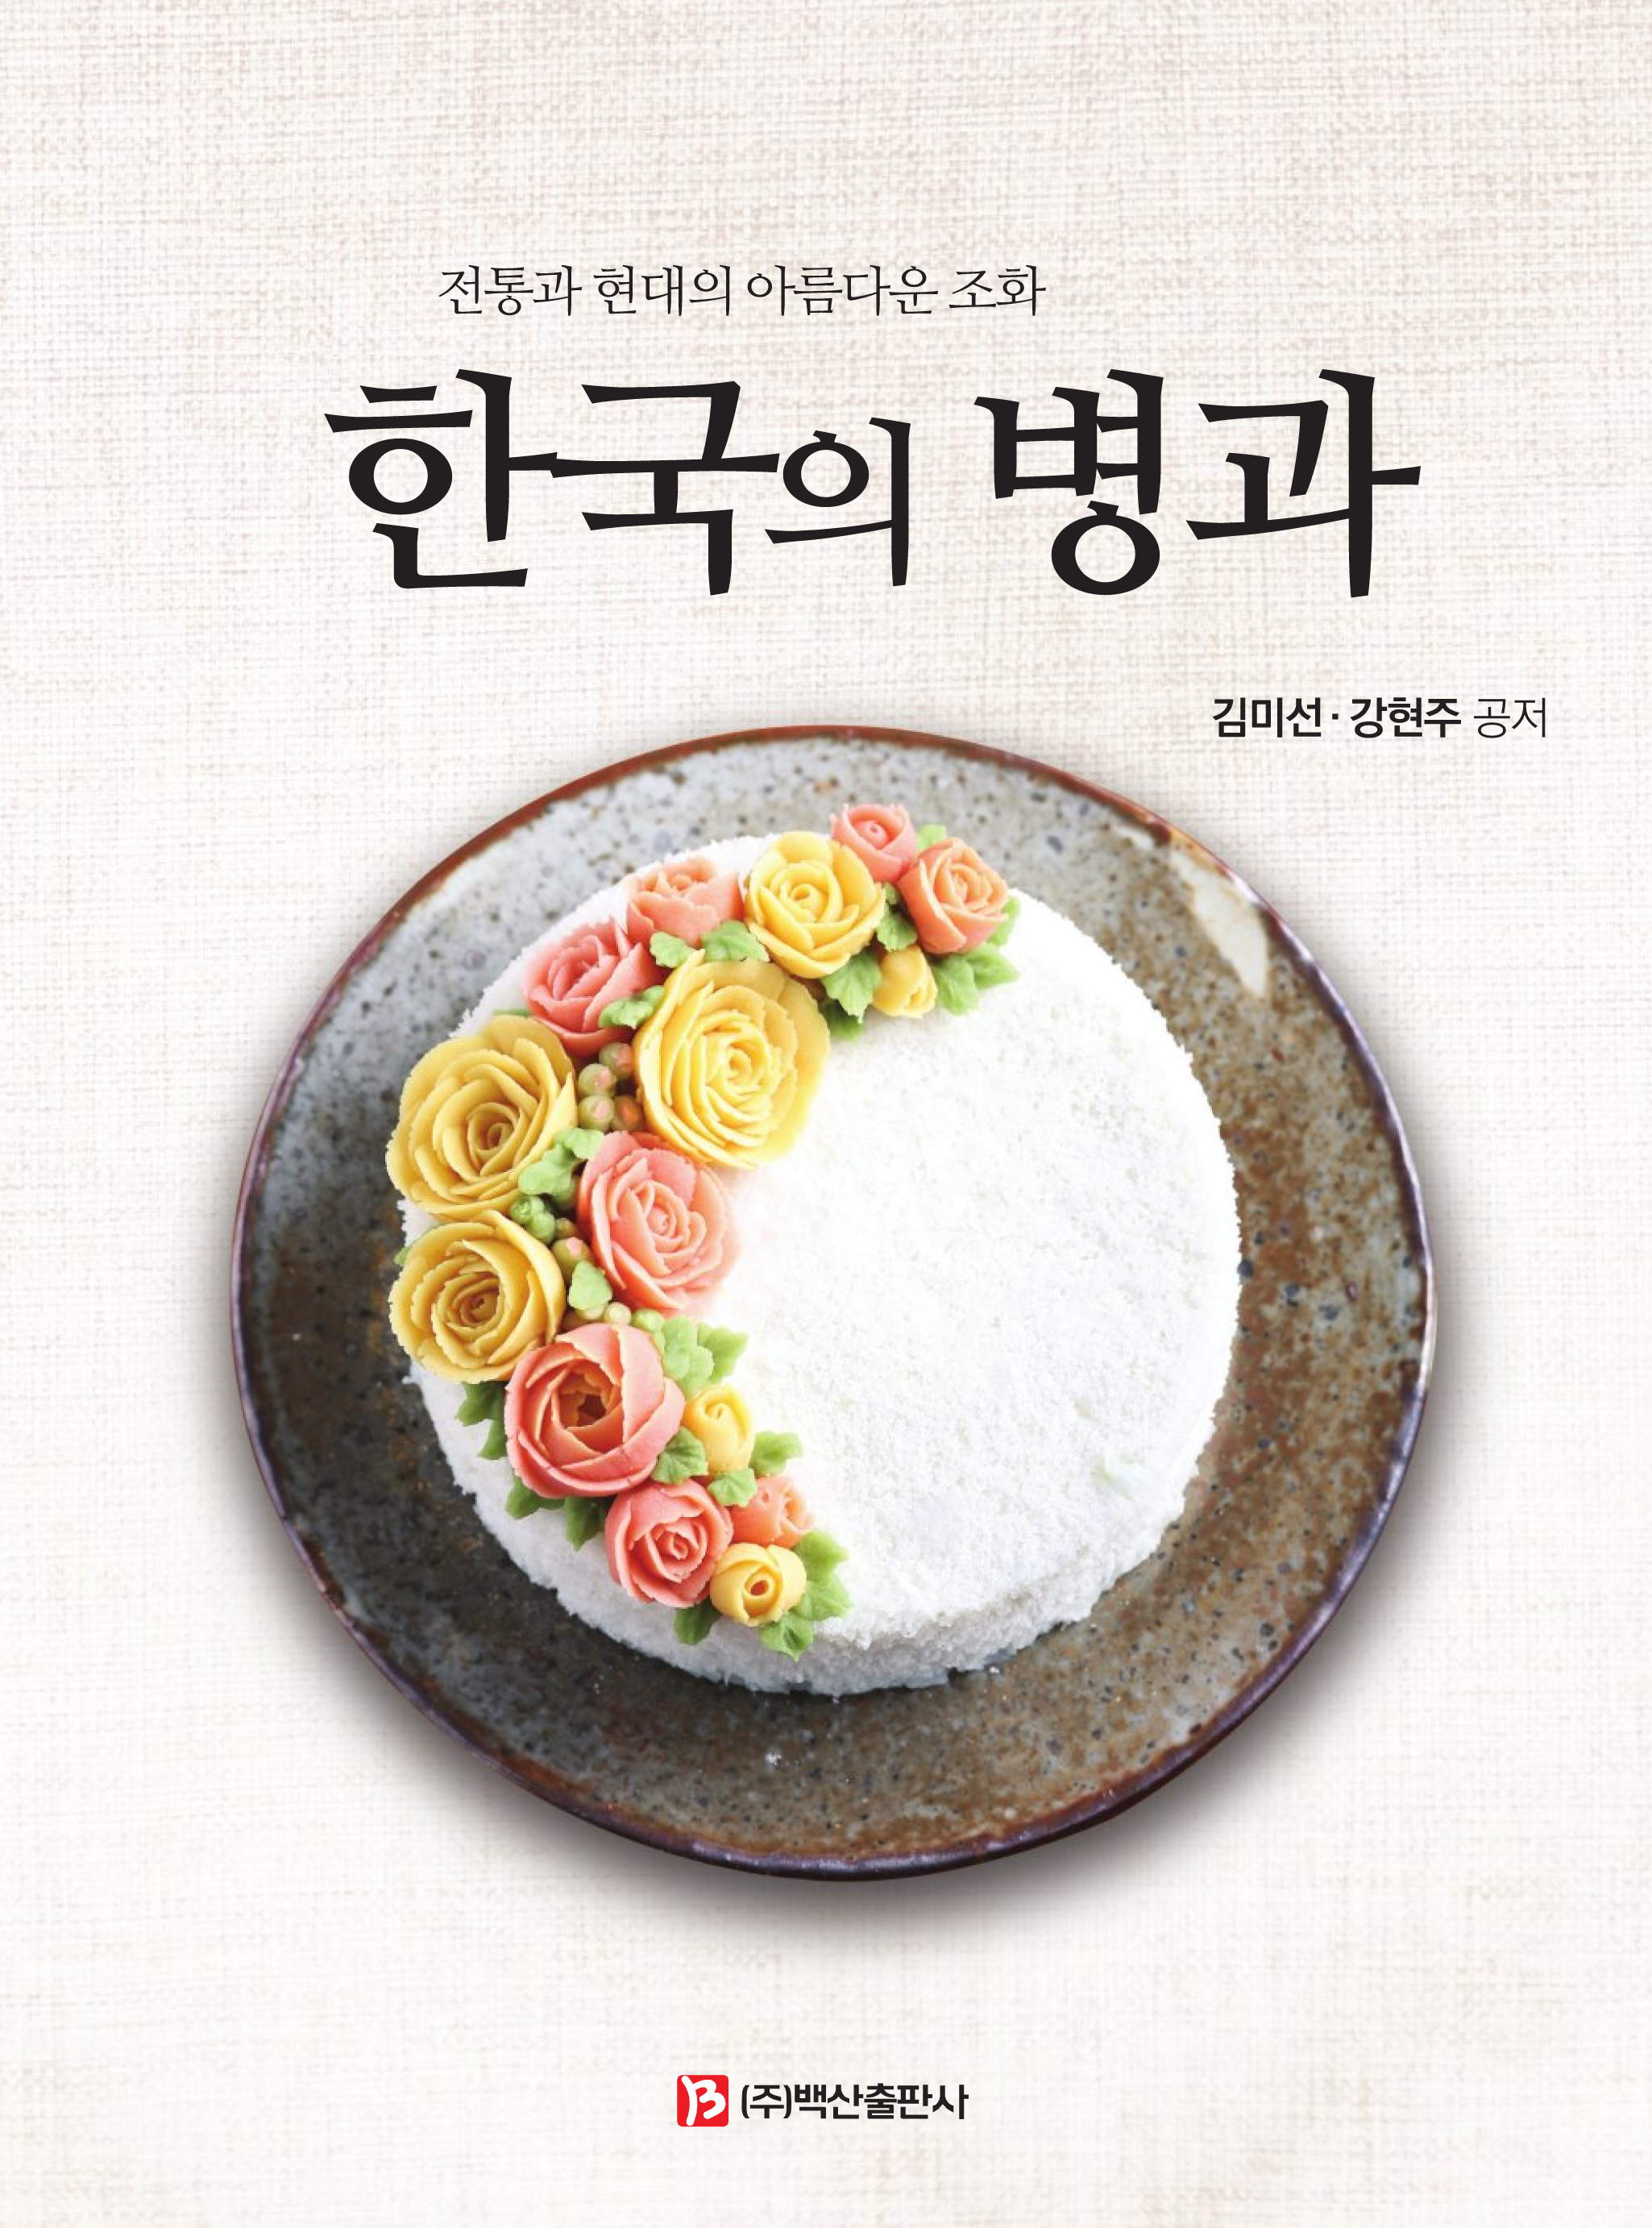 한국의 병과 (전통과 현대의 아름다운 조화)